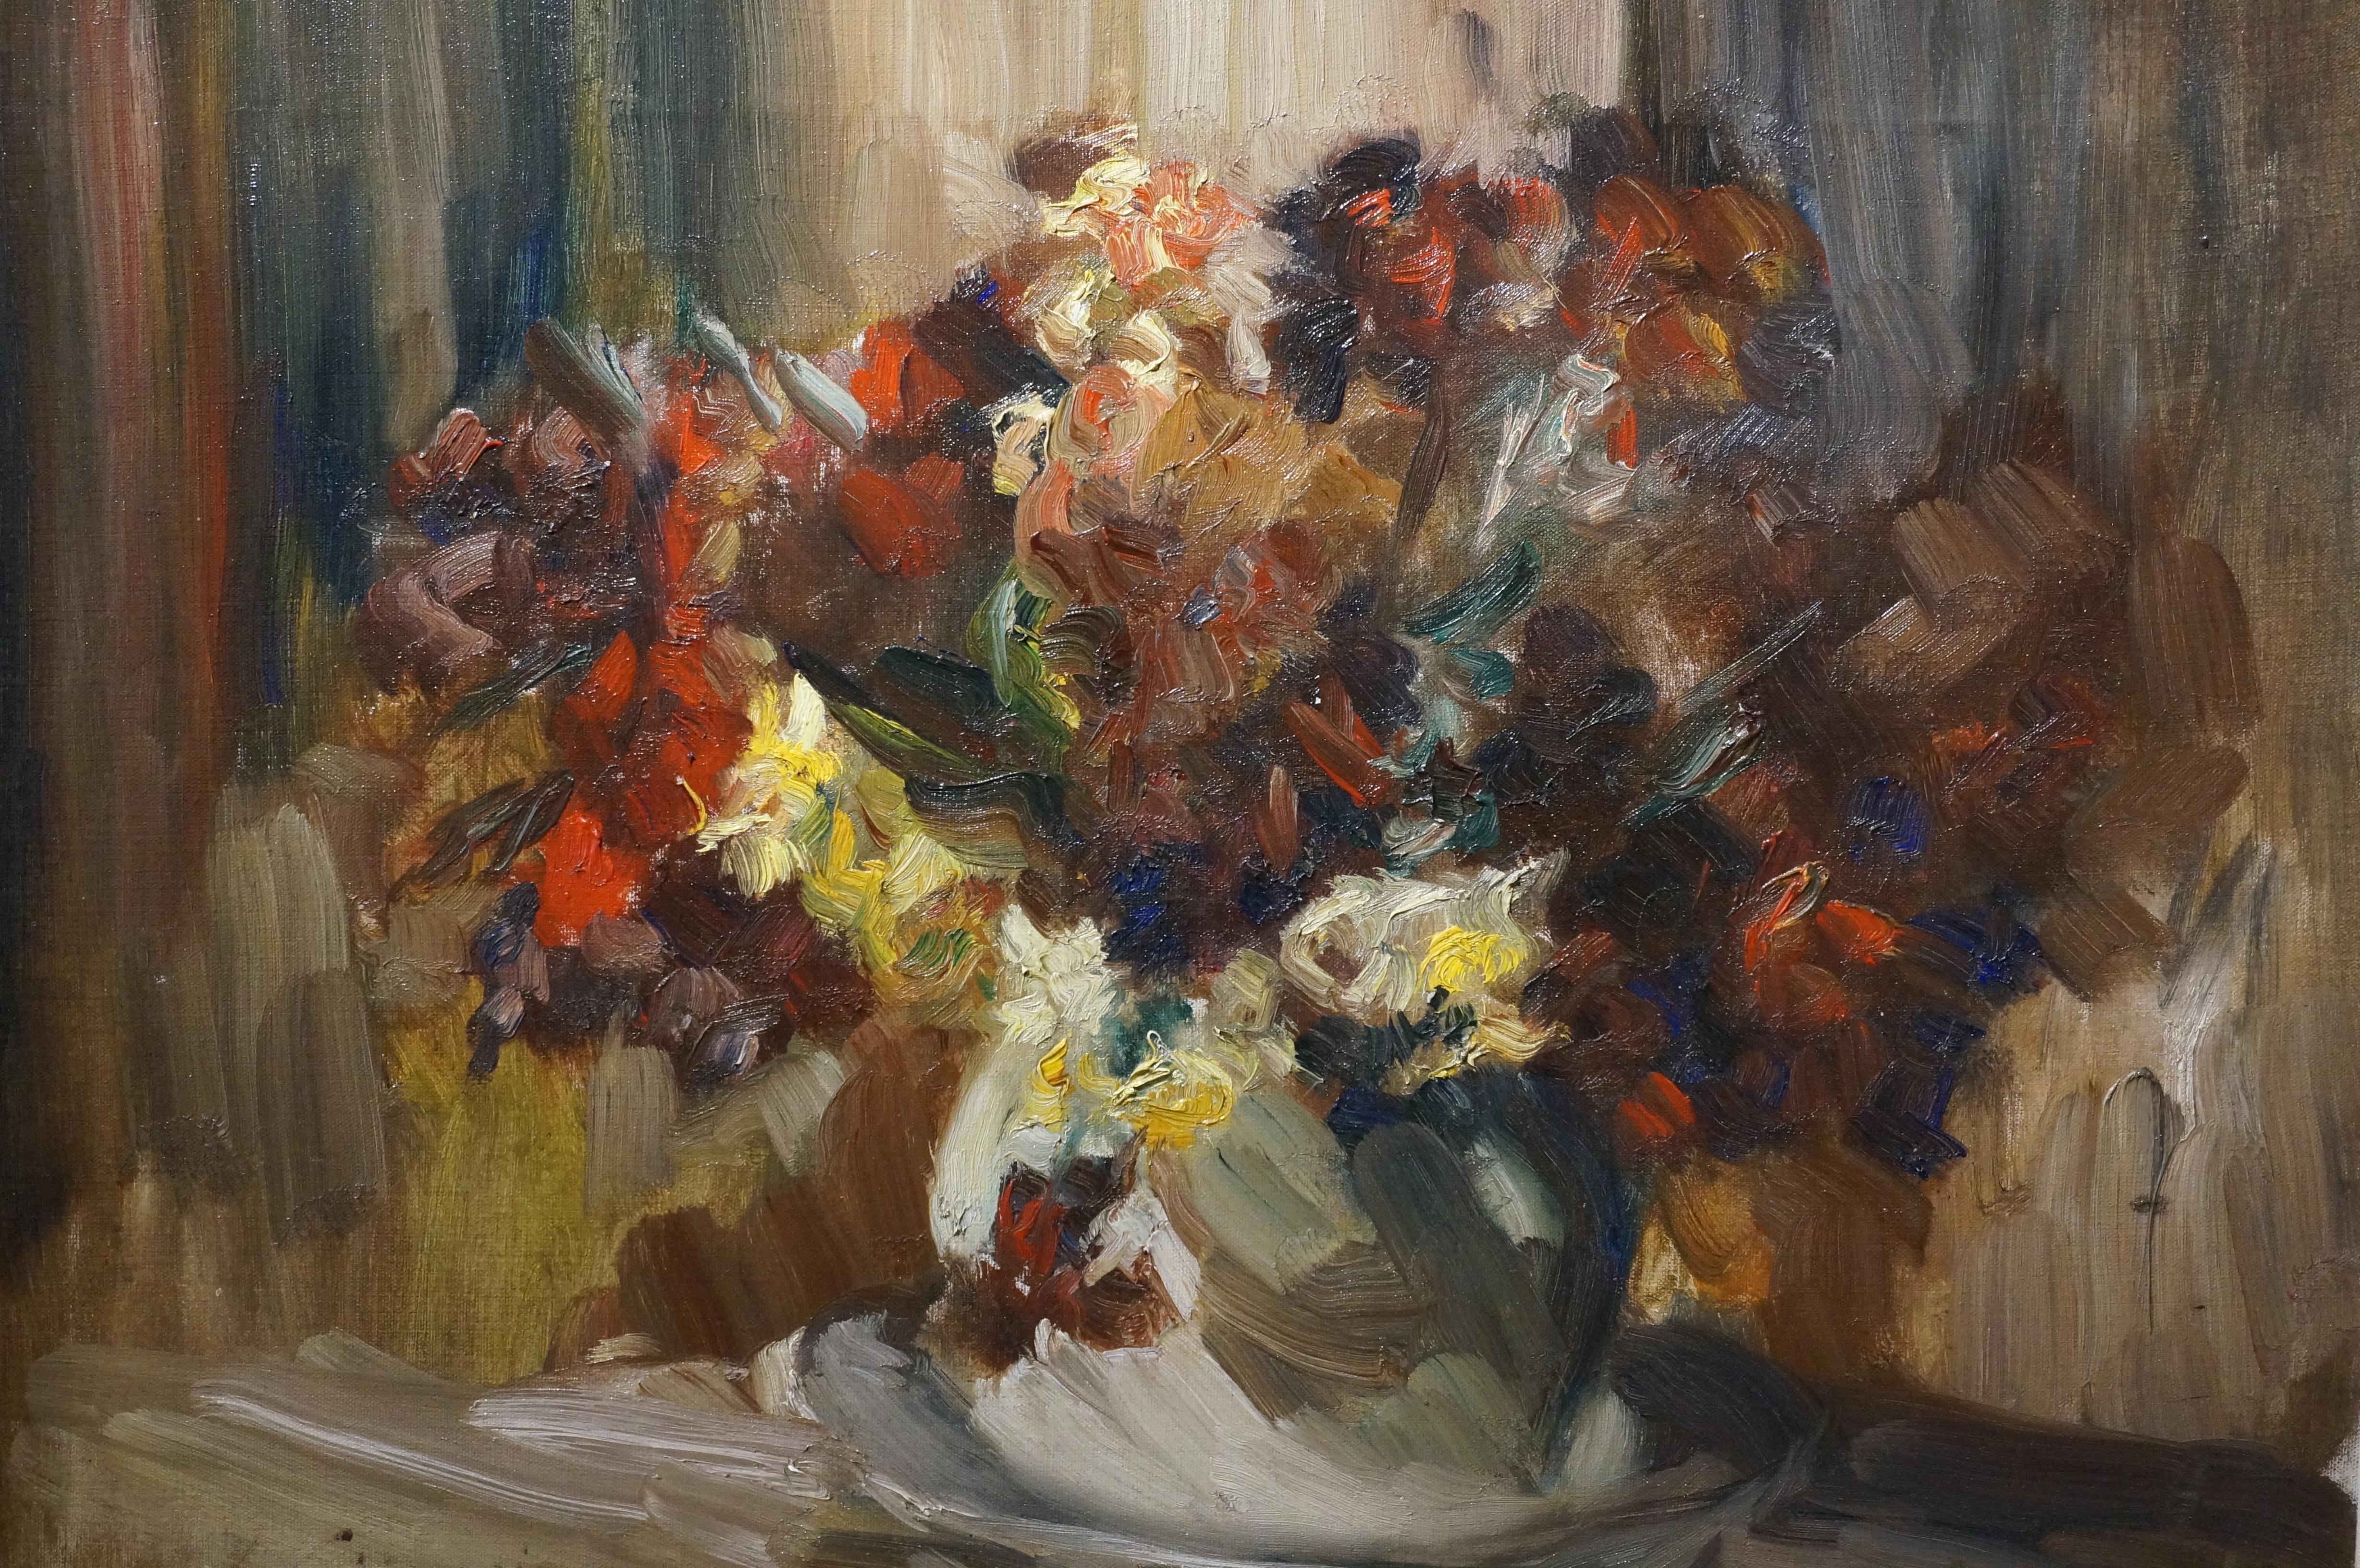 Stilleben mit Blumen in einer Vase, signiert V. Simonin.
Victor Simonin wurde 1877 in Brüssel geboren.
Er wurde an der 